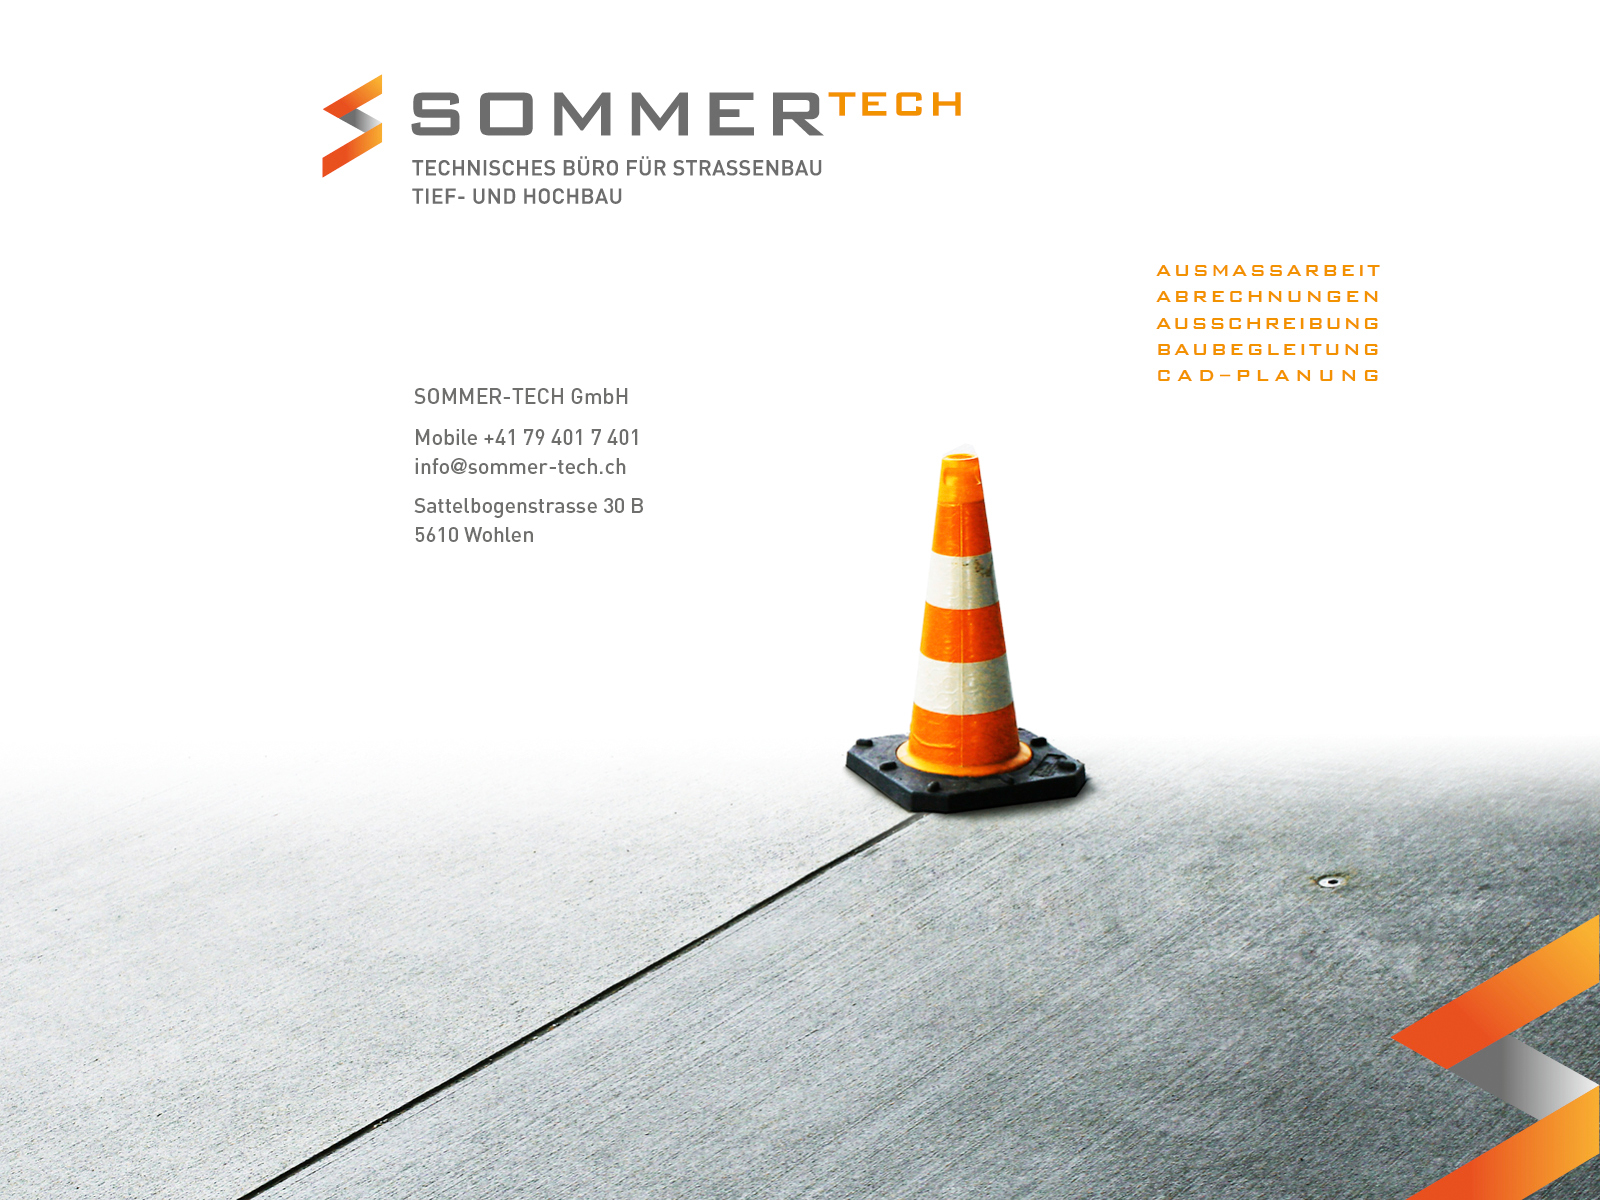 Doris Sommer / Sommer Tech - Technisches Büro für Strassenbau, Tief- und Hochbau – Spezialistin in Aussmassarbeit, Abrechnungen, Ausschreibung, Baubegleitung und CAD-Planung